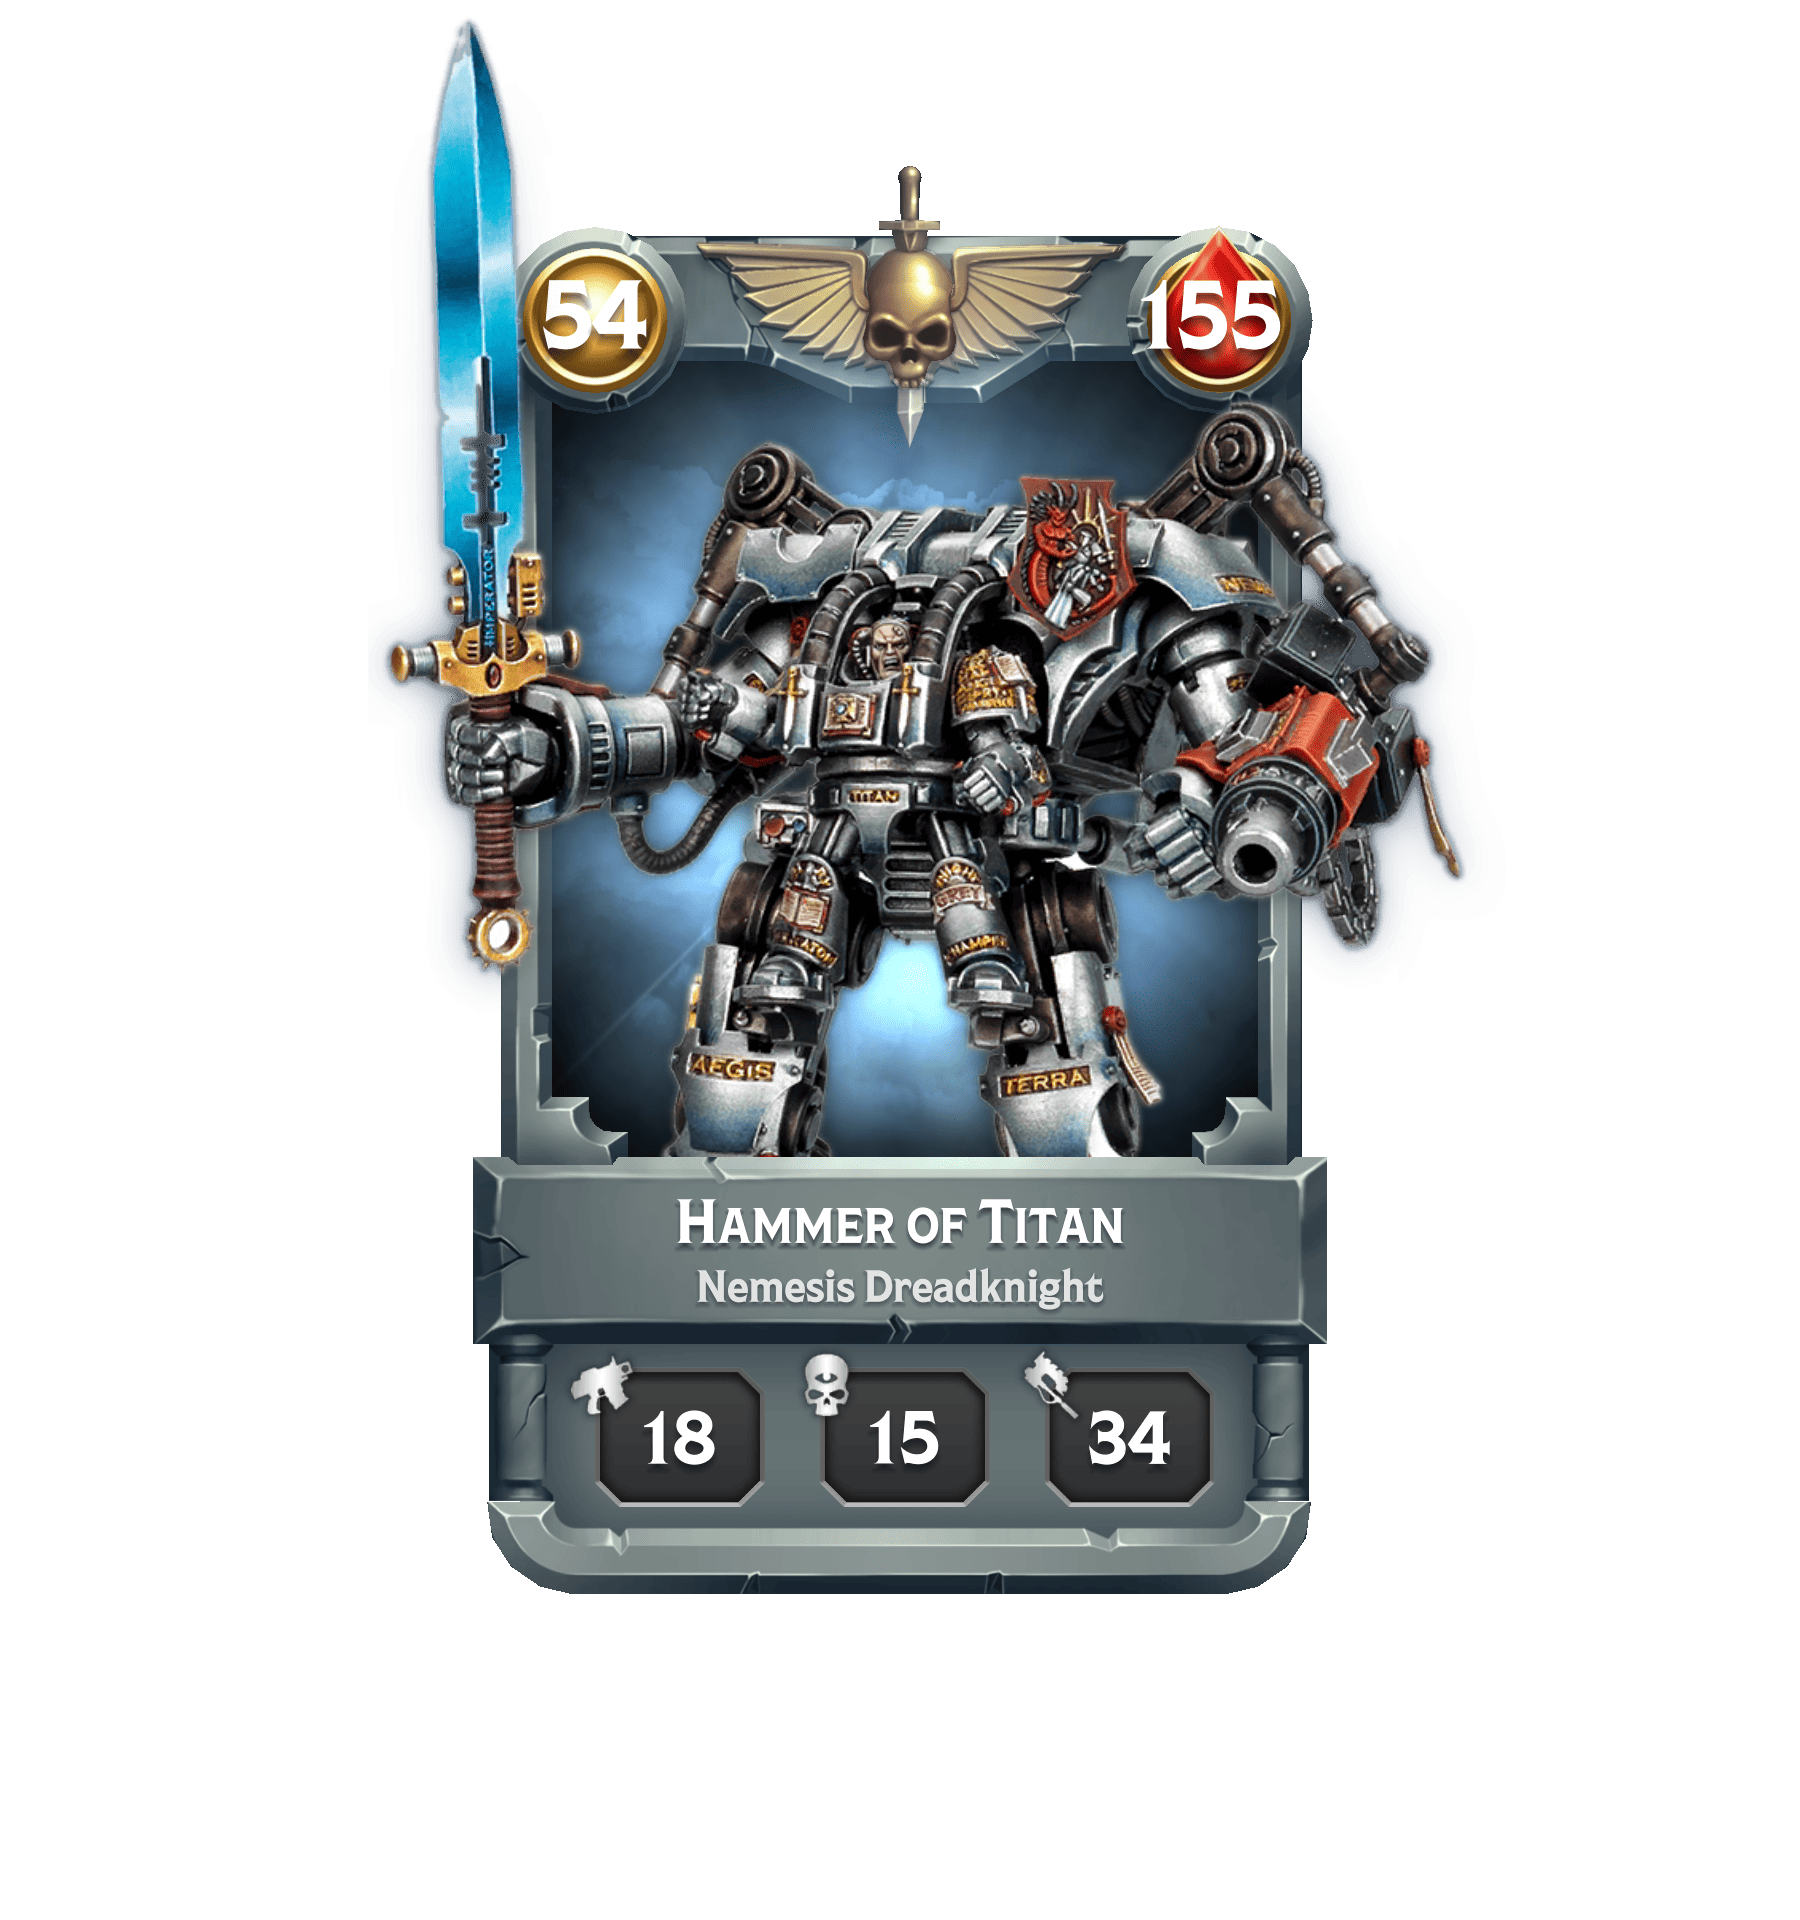 Warhammer cards